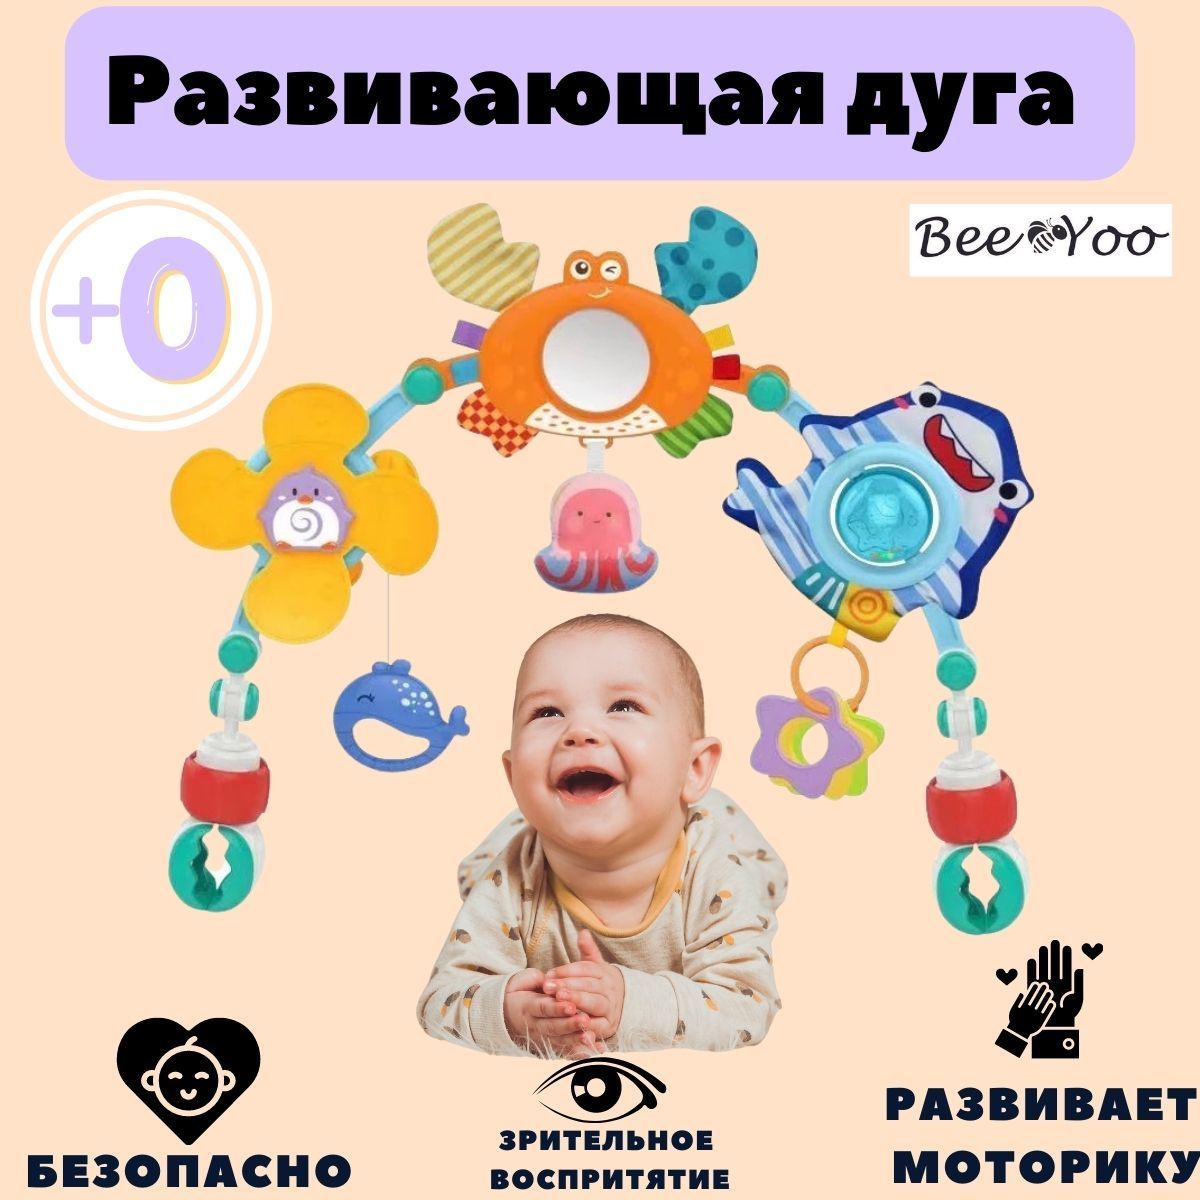 Игрушки на дугах Мир детства купить в Москве в rov-hyundai.ru